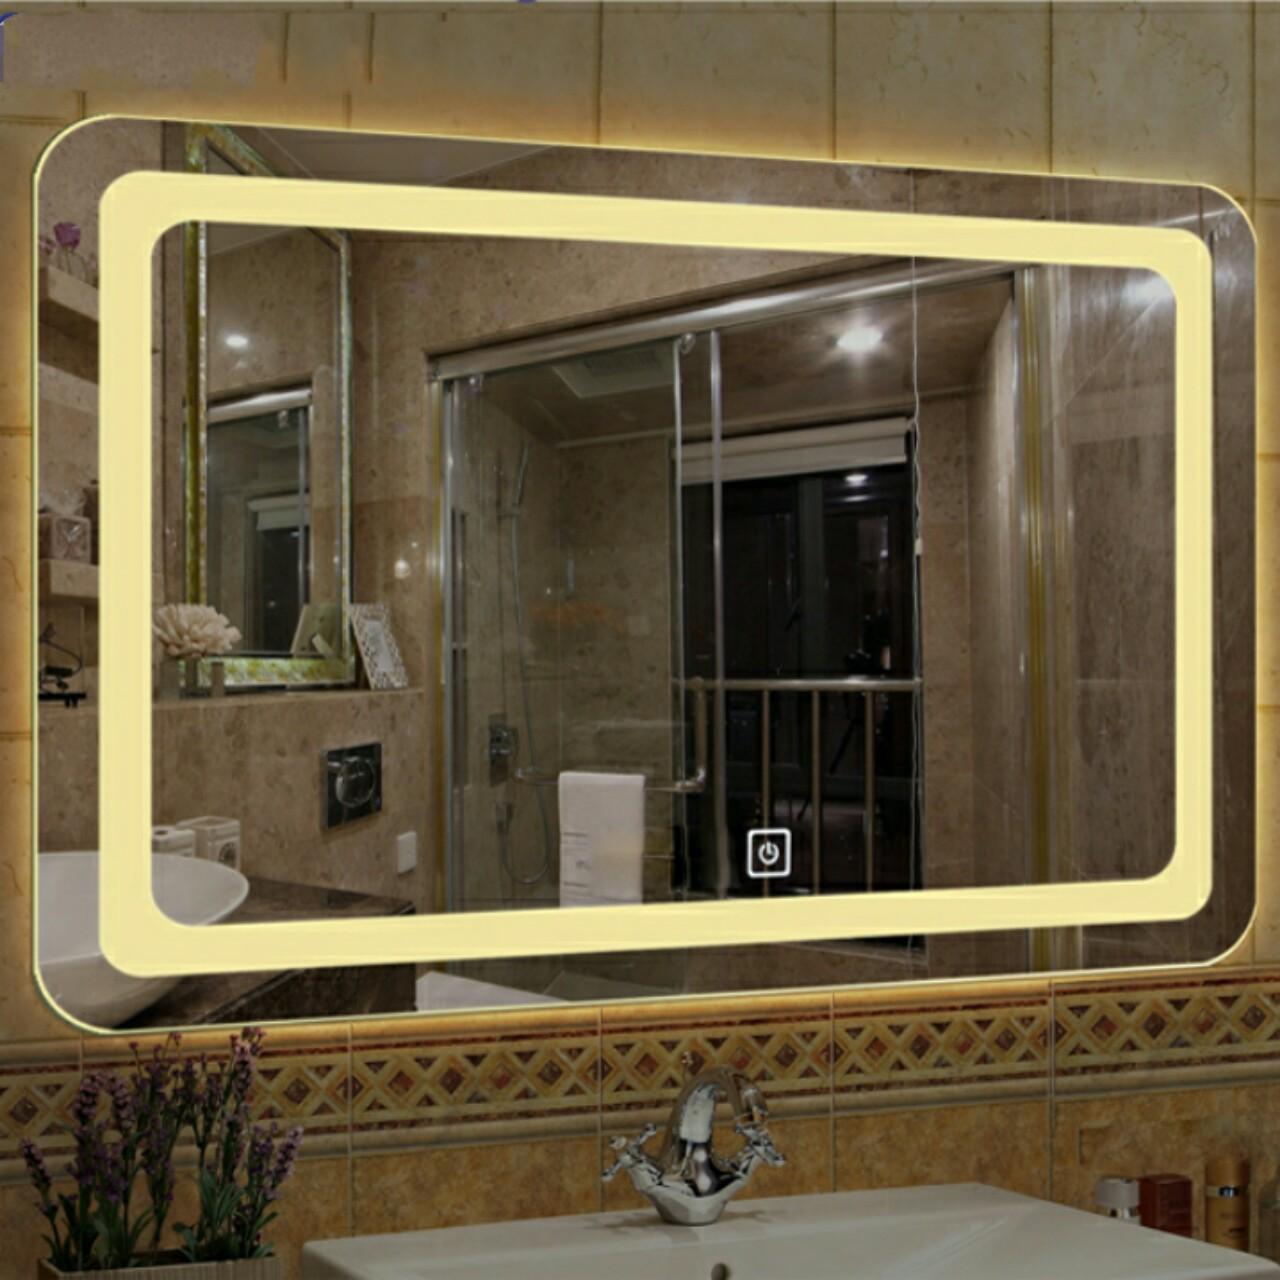 Đèn Led gương sang trọng cho phòng tắm, phòng make up.